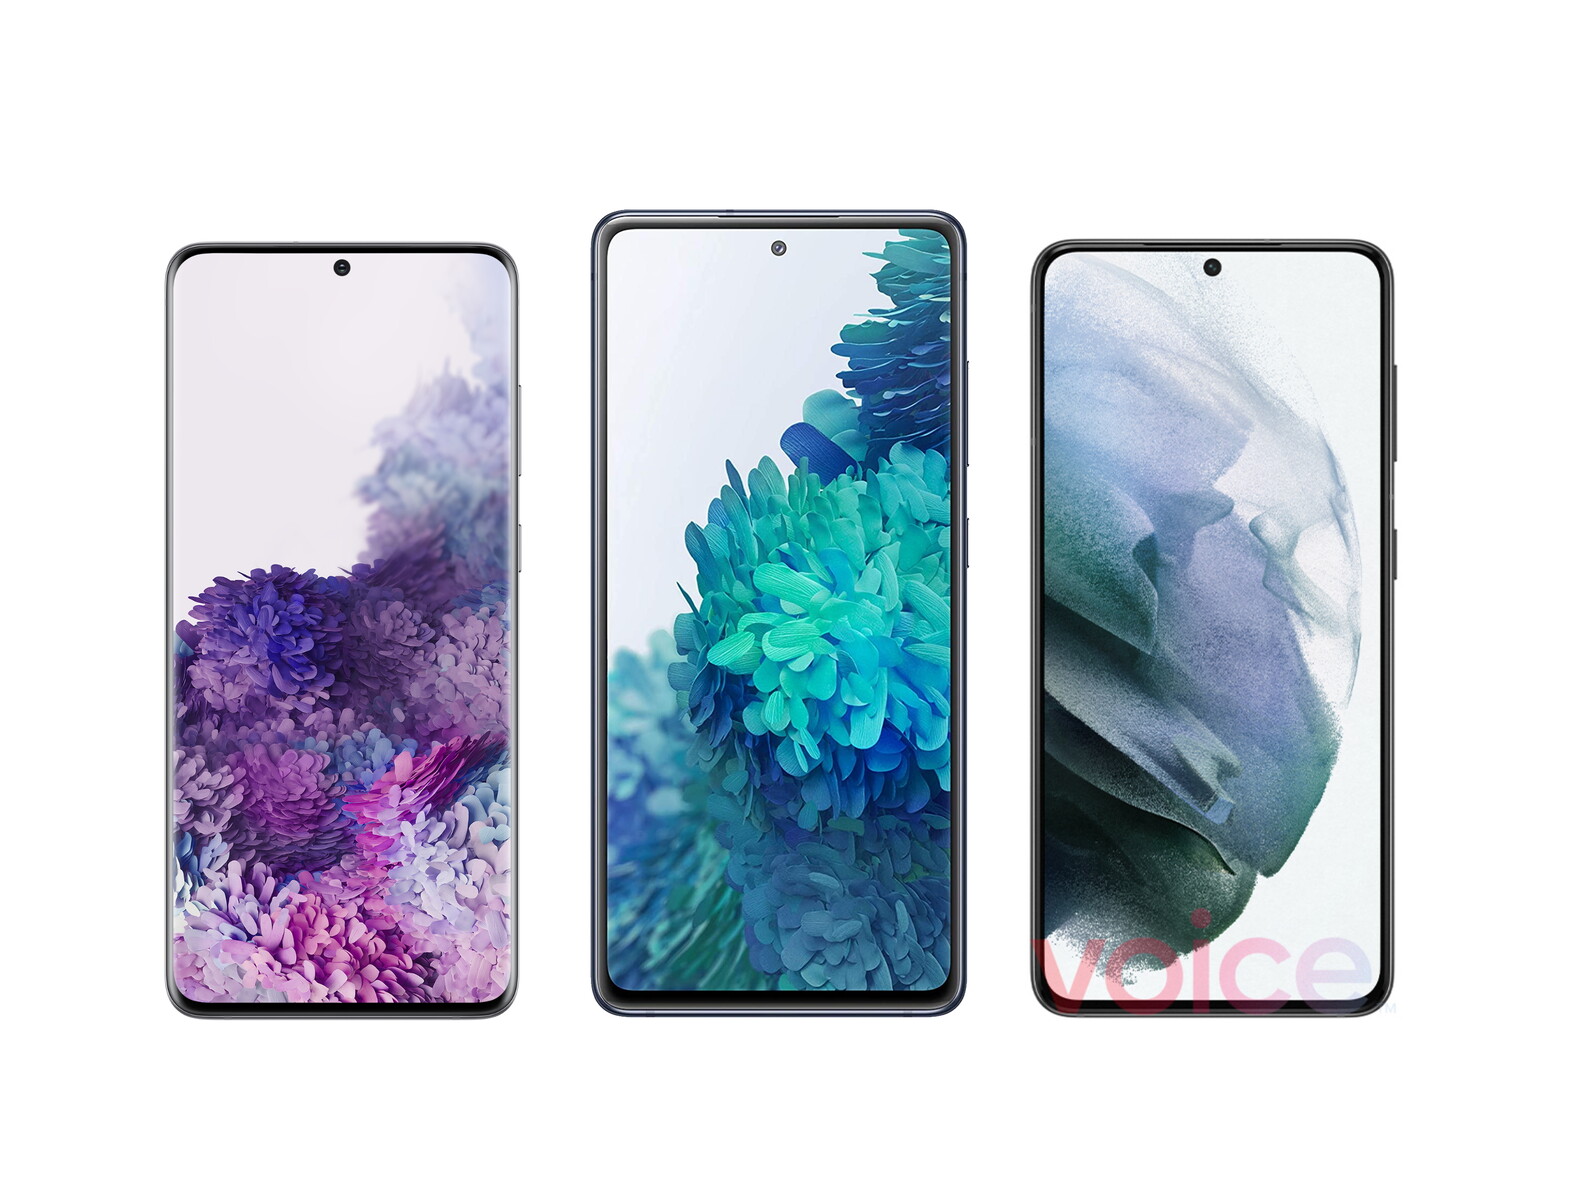 Những hình ảnh rò rỉ về Galaxy S21 5G đã tiết lộ thiết kế màn hình đẹp mắt và tinh tế. Hãy xem ngay để đón nhận những trải nghiệm tuyệt vời mà thiết bị của Samsung mang lại.